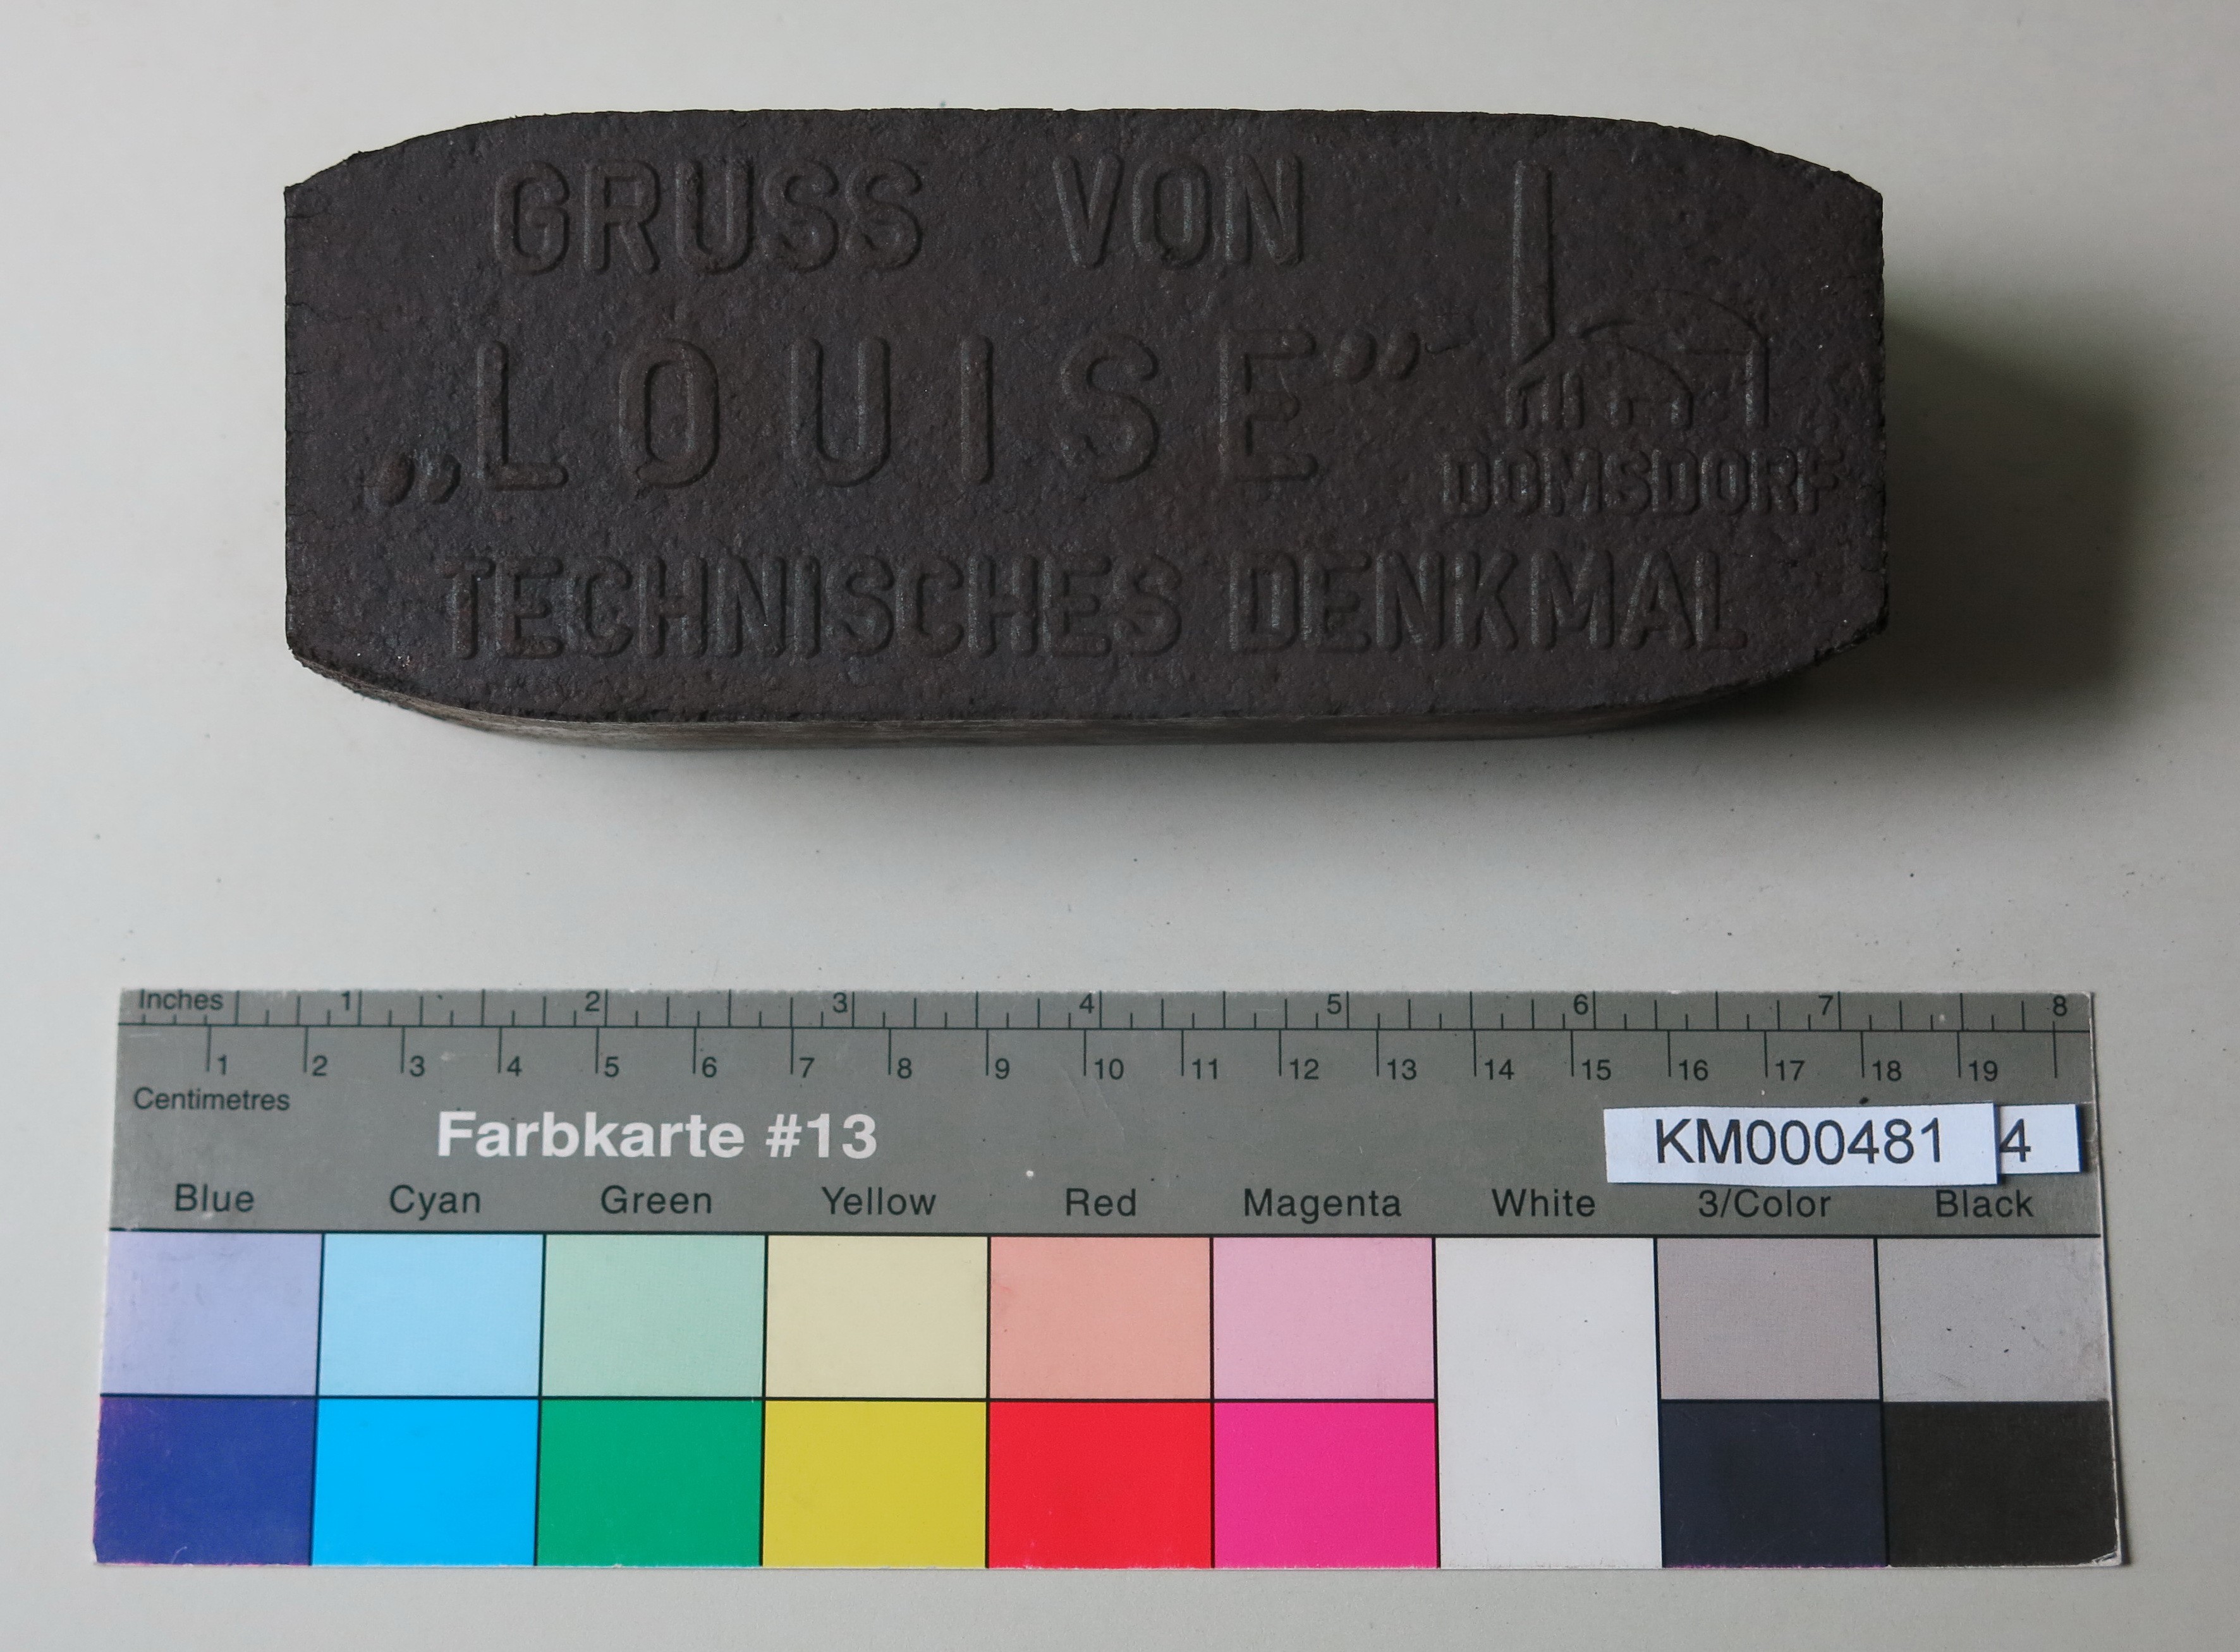 Zierbrikett "GRUSS VON 'LOUISE' DOMSDORF TECHNISCHES DENKMAL " (Energiefabrik Knappenrode CC BY-SA)